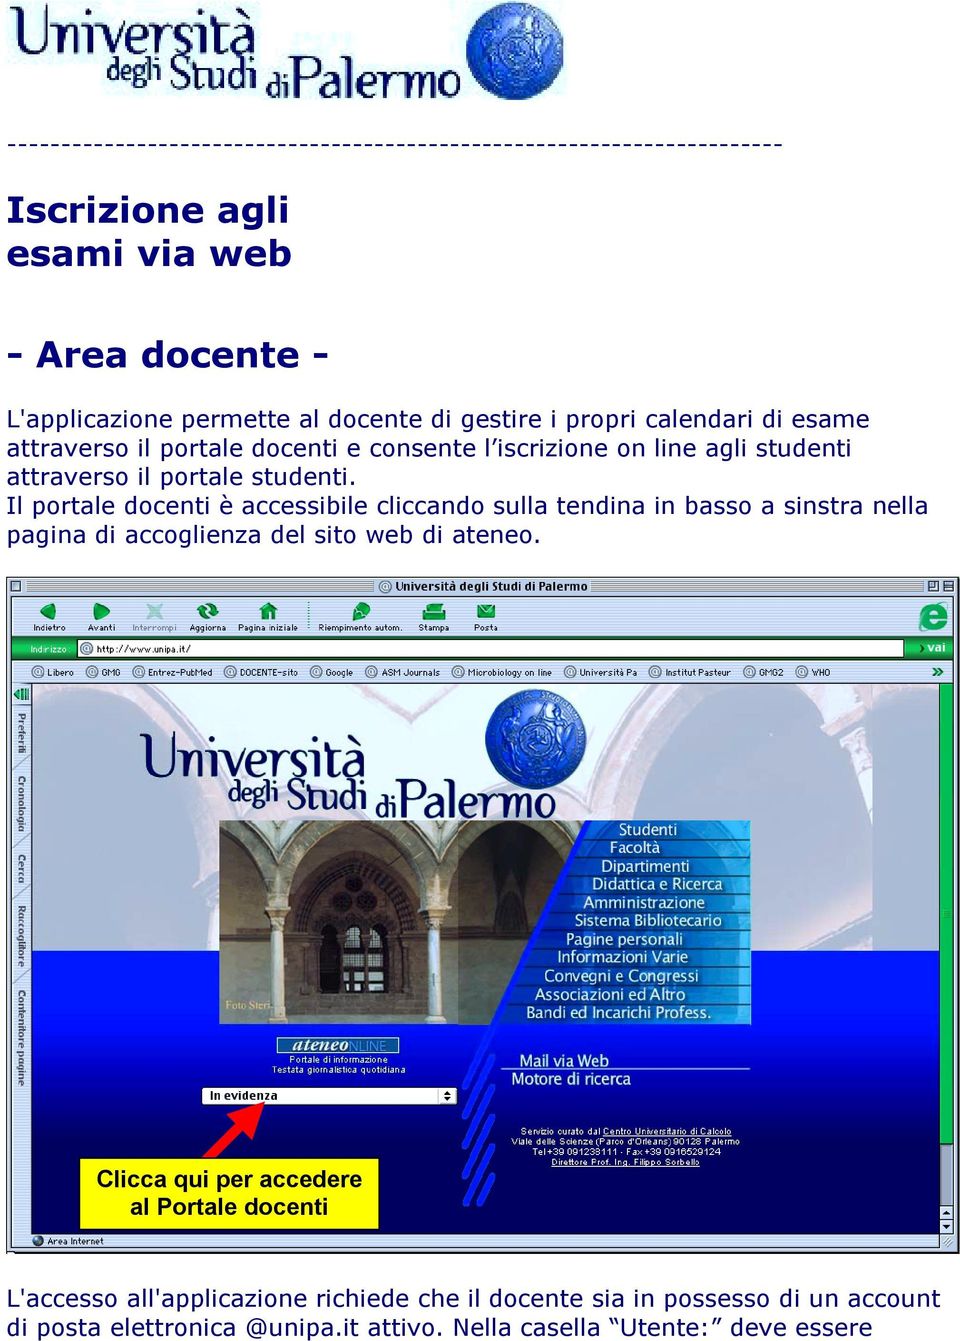 Il portale docenti è accessibile cliccando sulla tendina in basso a sinstra nella pagina di accoglienza del sito web di ateneo.